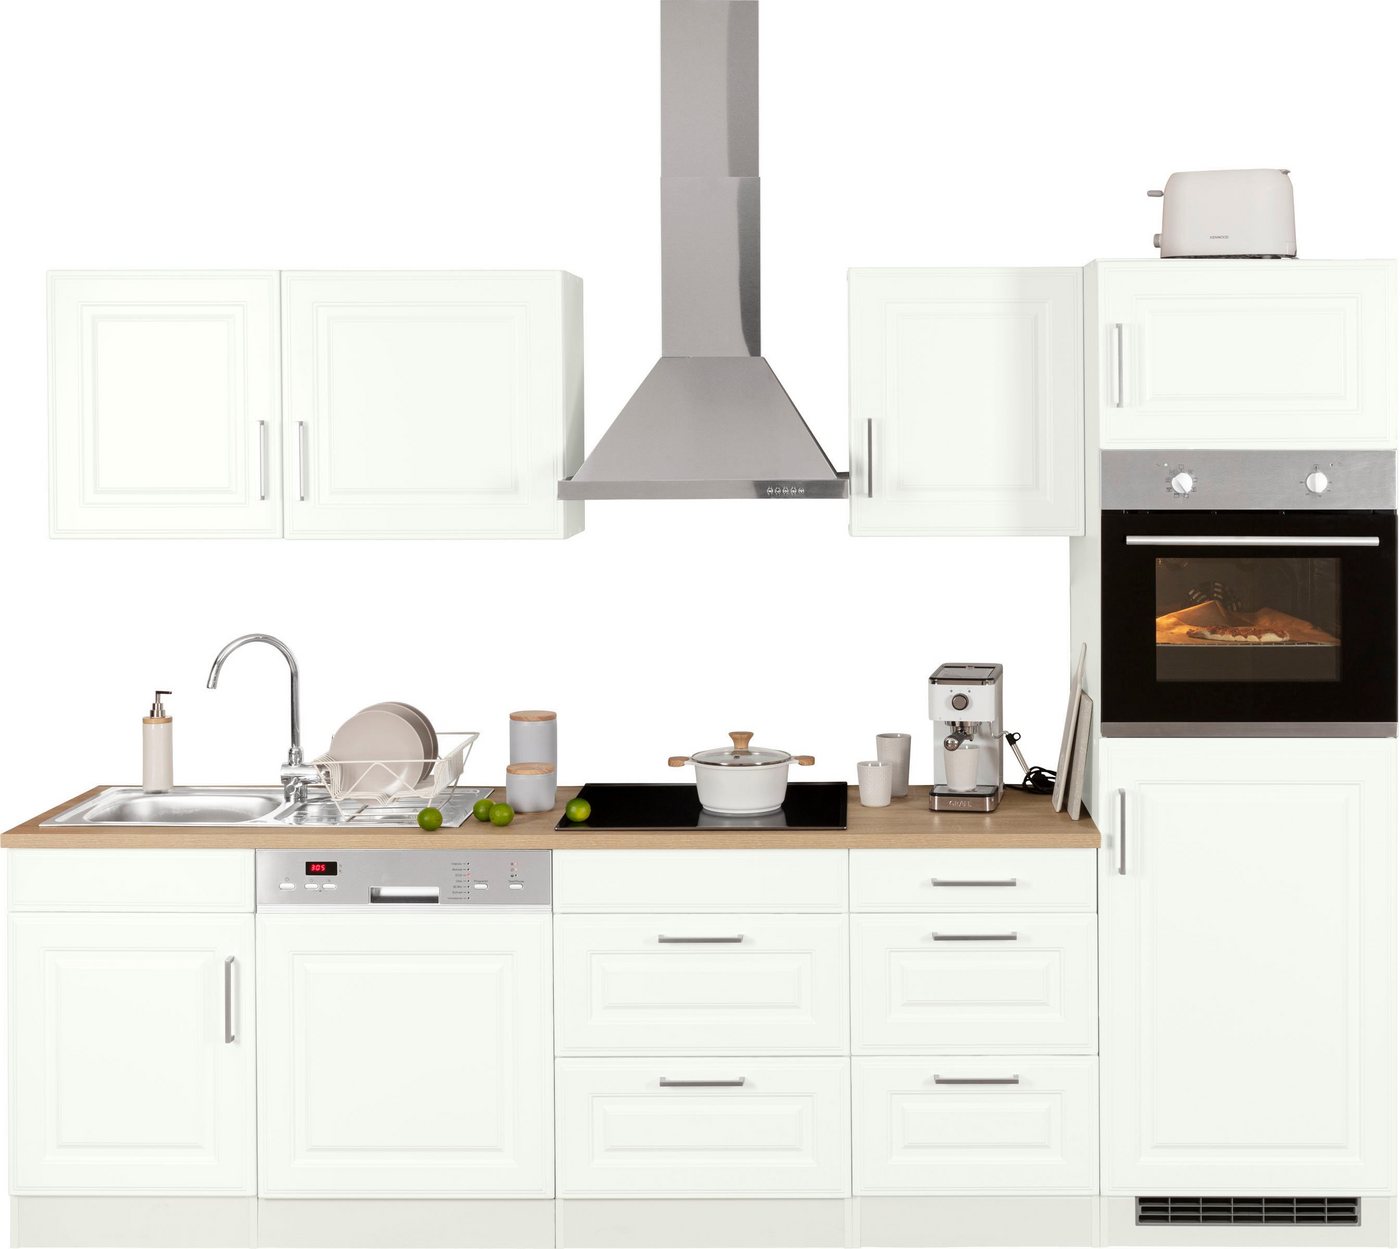 HELD MÖBEL Küchenzeile Stockholm, Breite 280 cm, mit hochwertigen MDF Fronten im Landhaus-Stil weiß